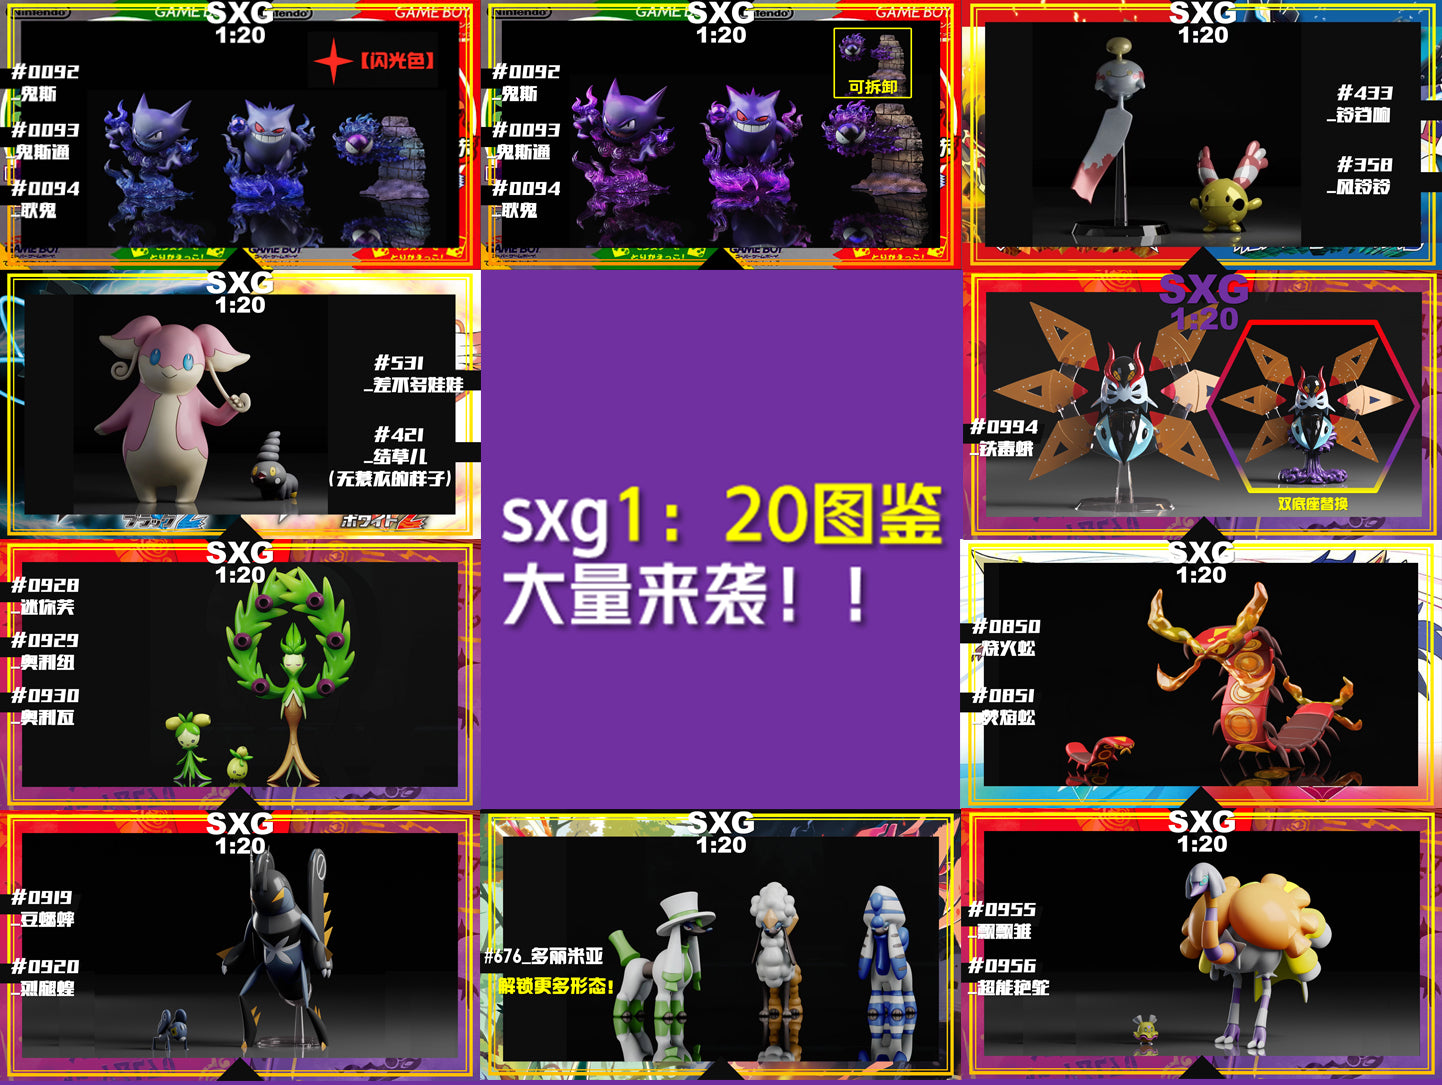 〖Sold Out〗Pokemon Scale World Furfrou #676 02  1:20 - SXG Studio